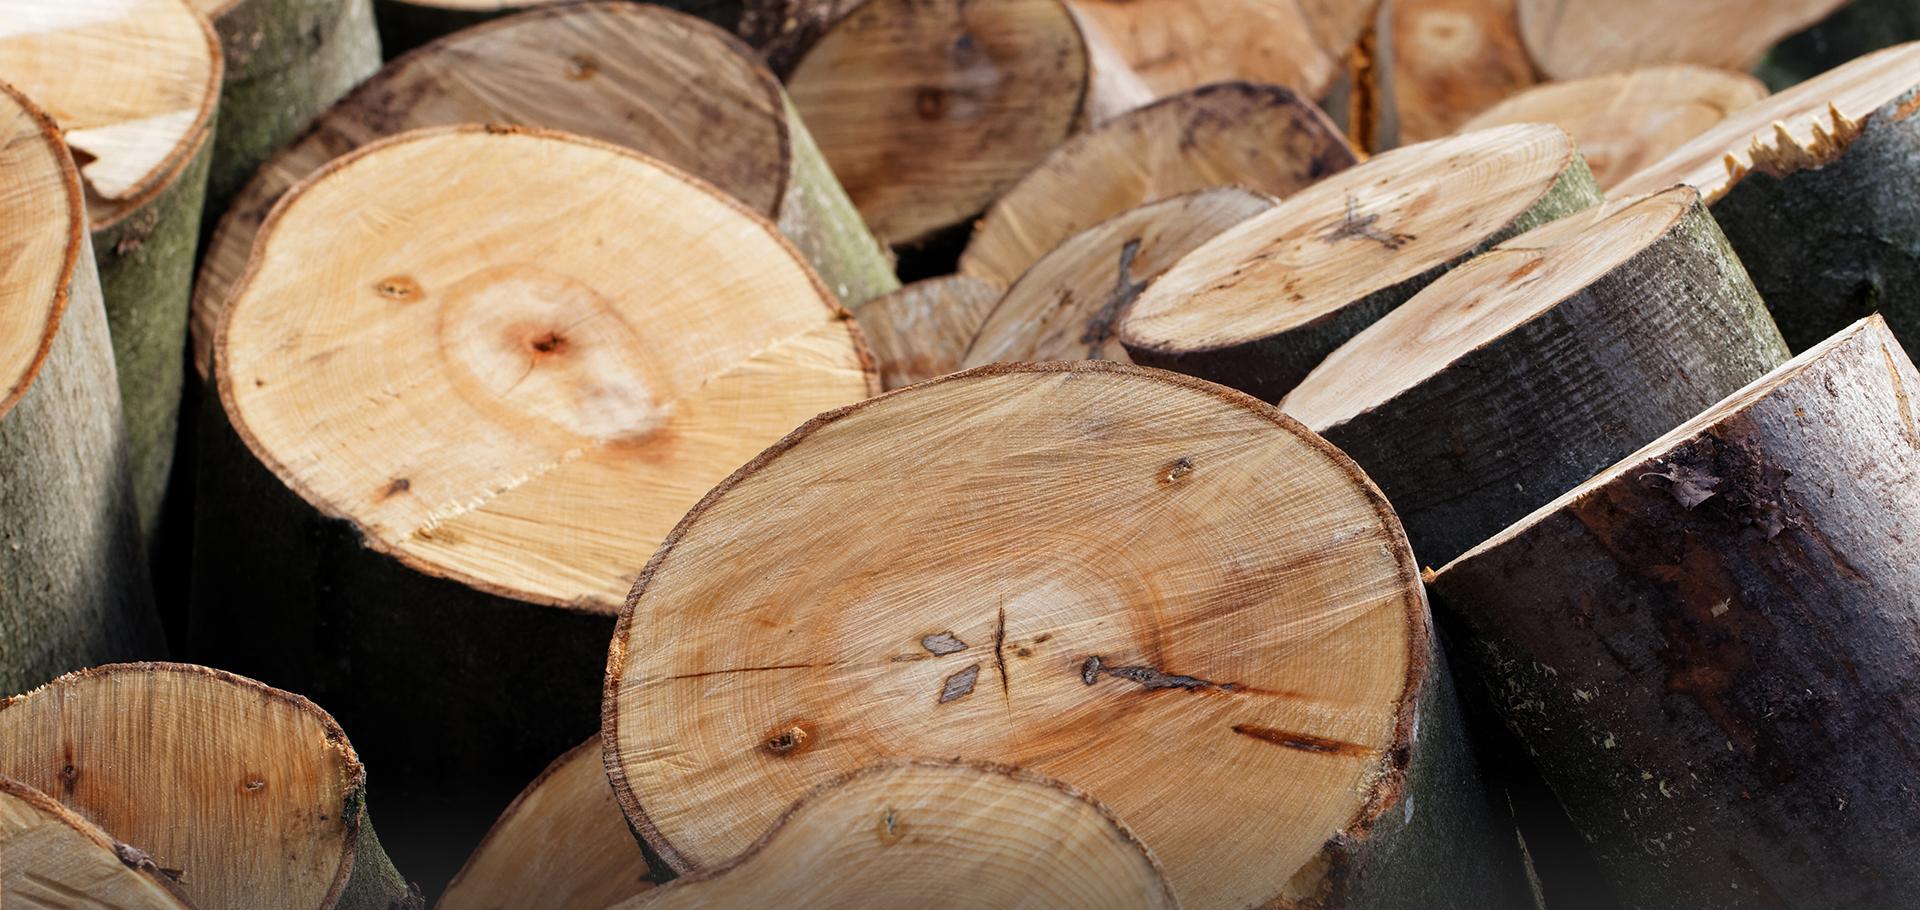 Woodmal Producent wyrobów drewnianych Slajd #1